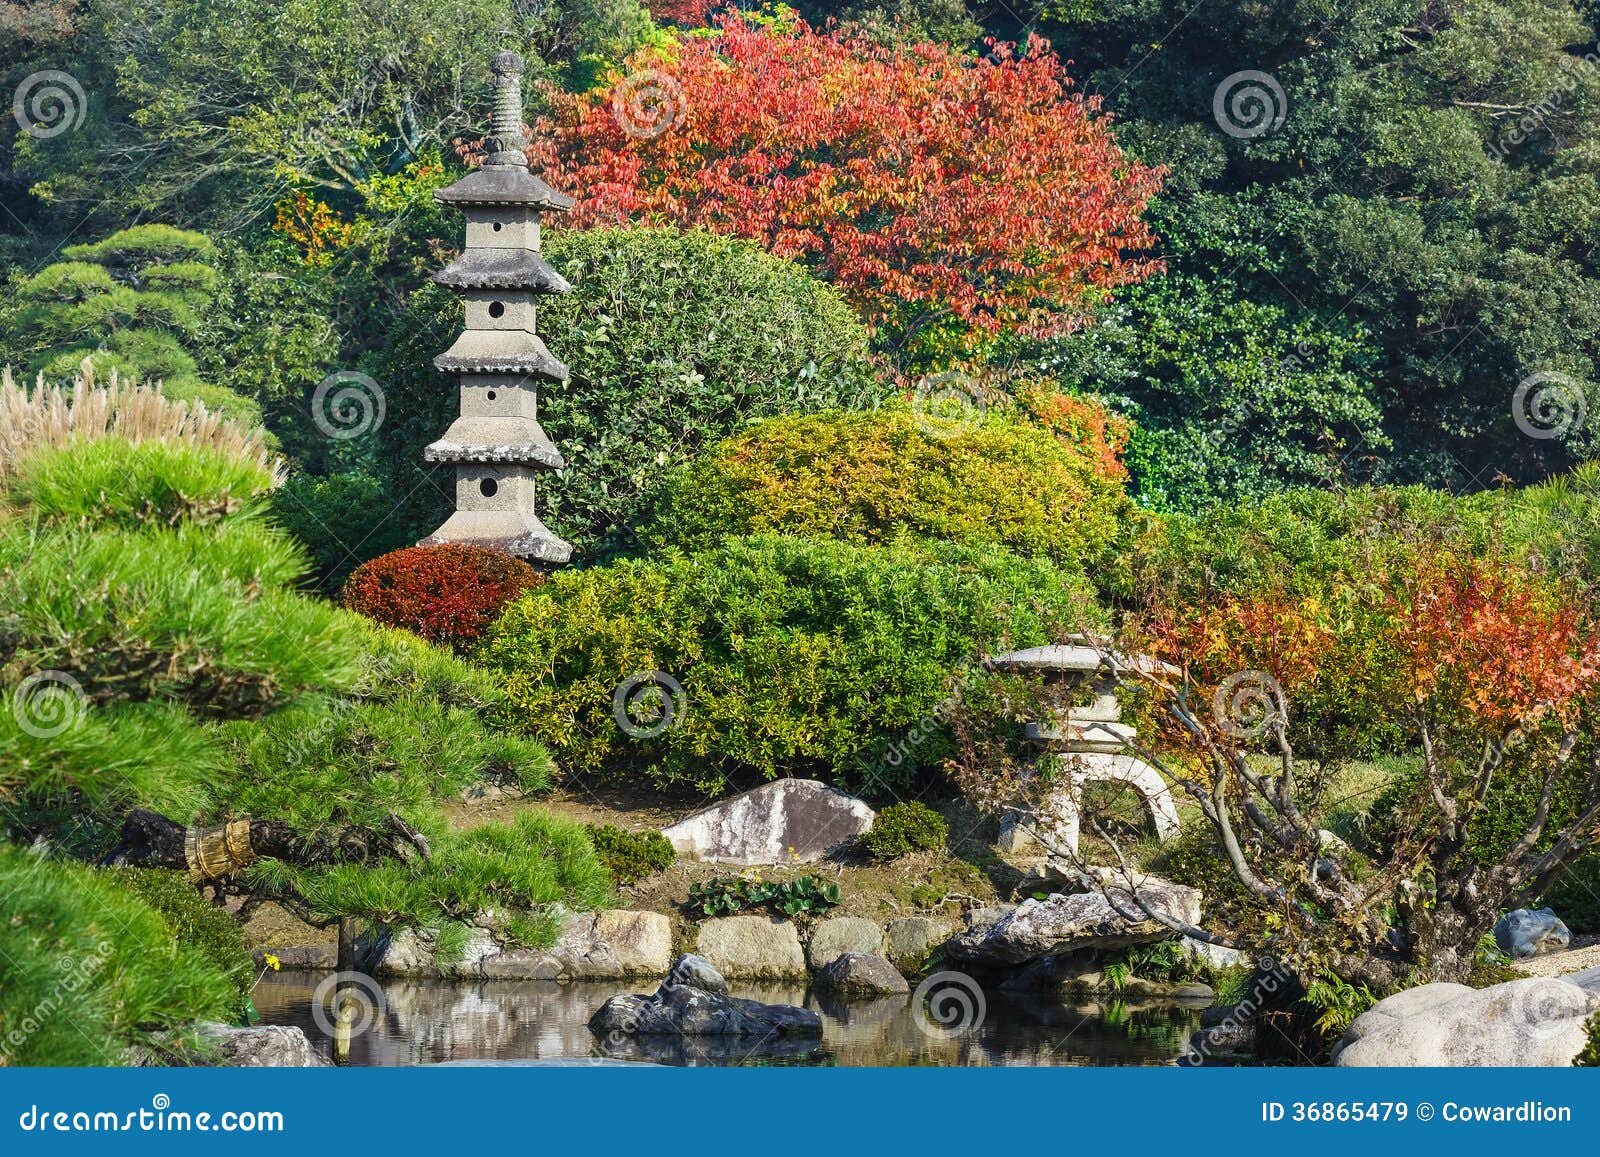 koraku-en garden in okayama